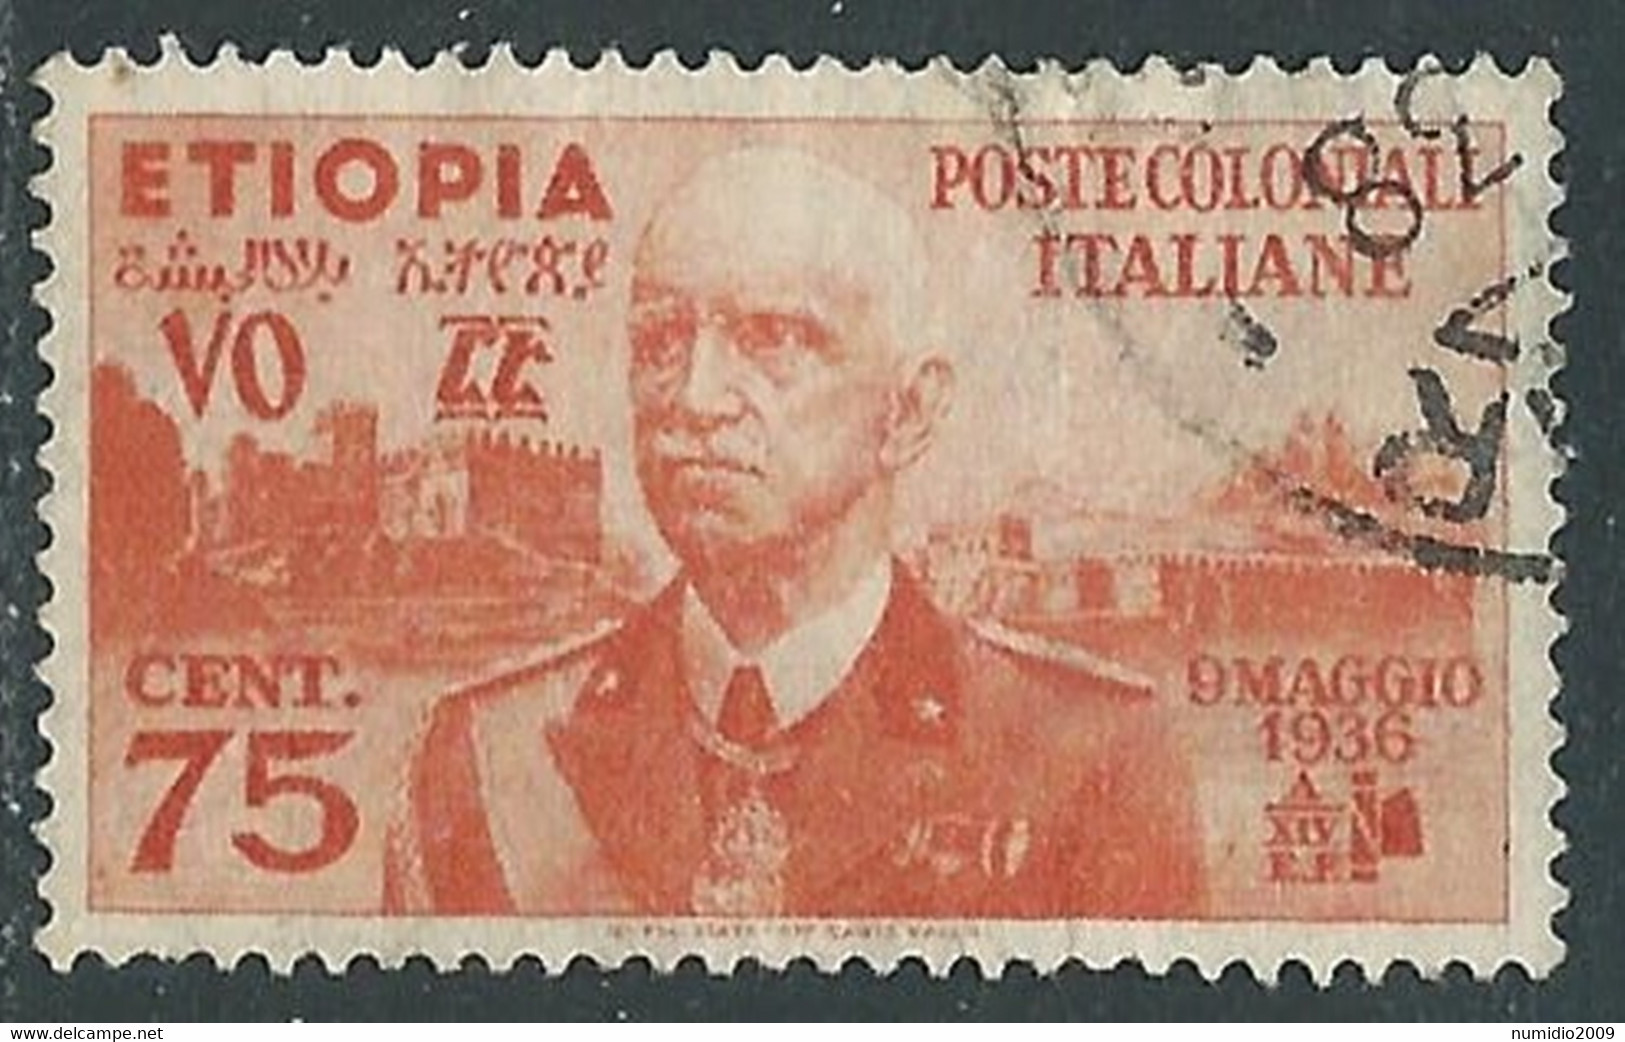 1936 ETIOPIA USATO EFFIGIE 75 CENT - RF25-5 - Ethiopië